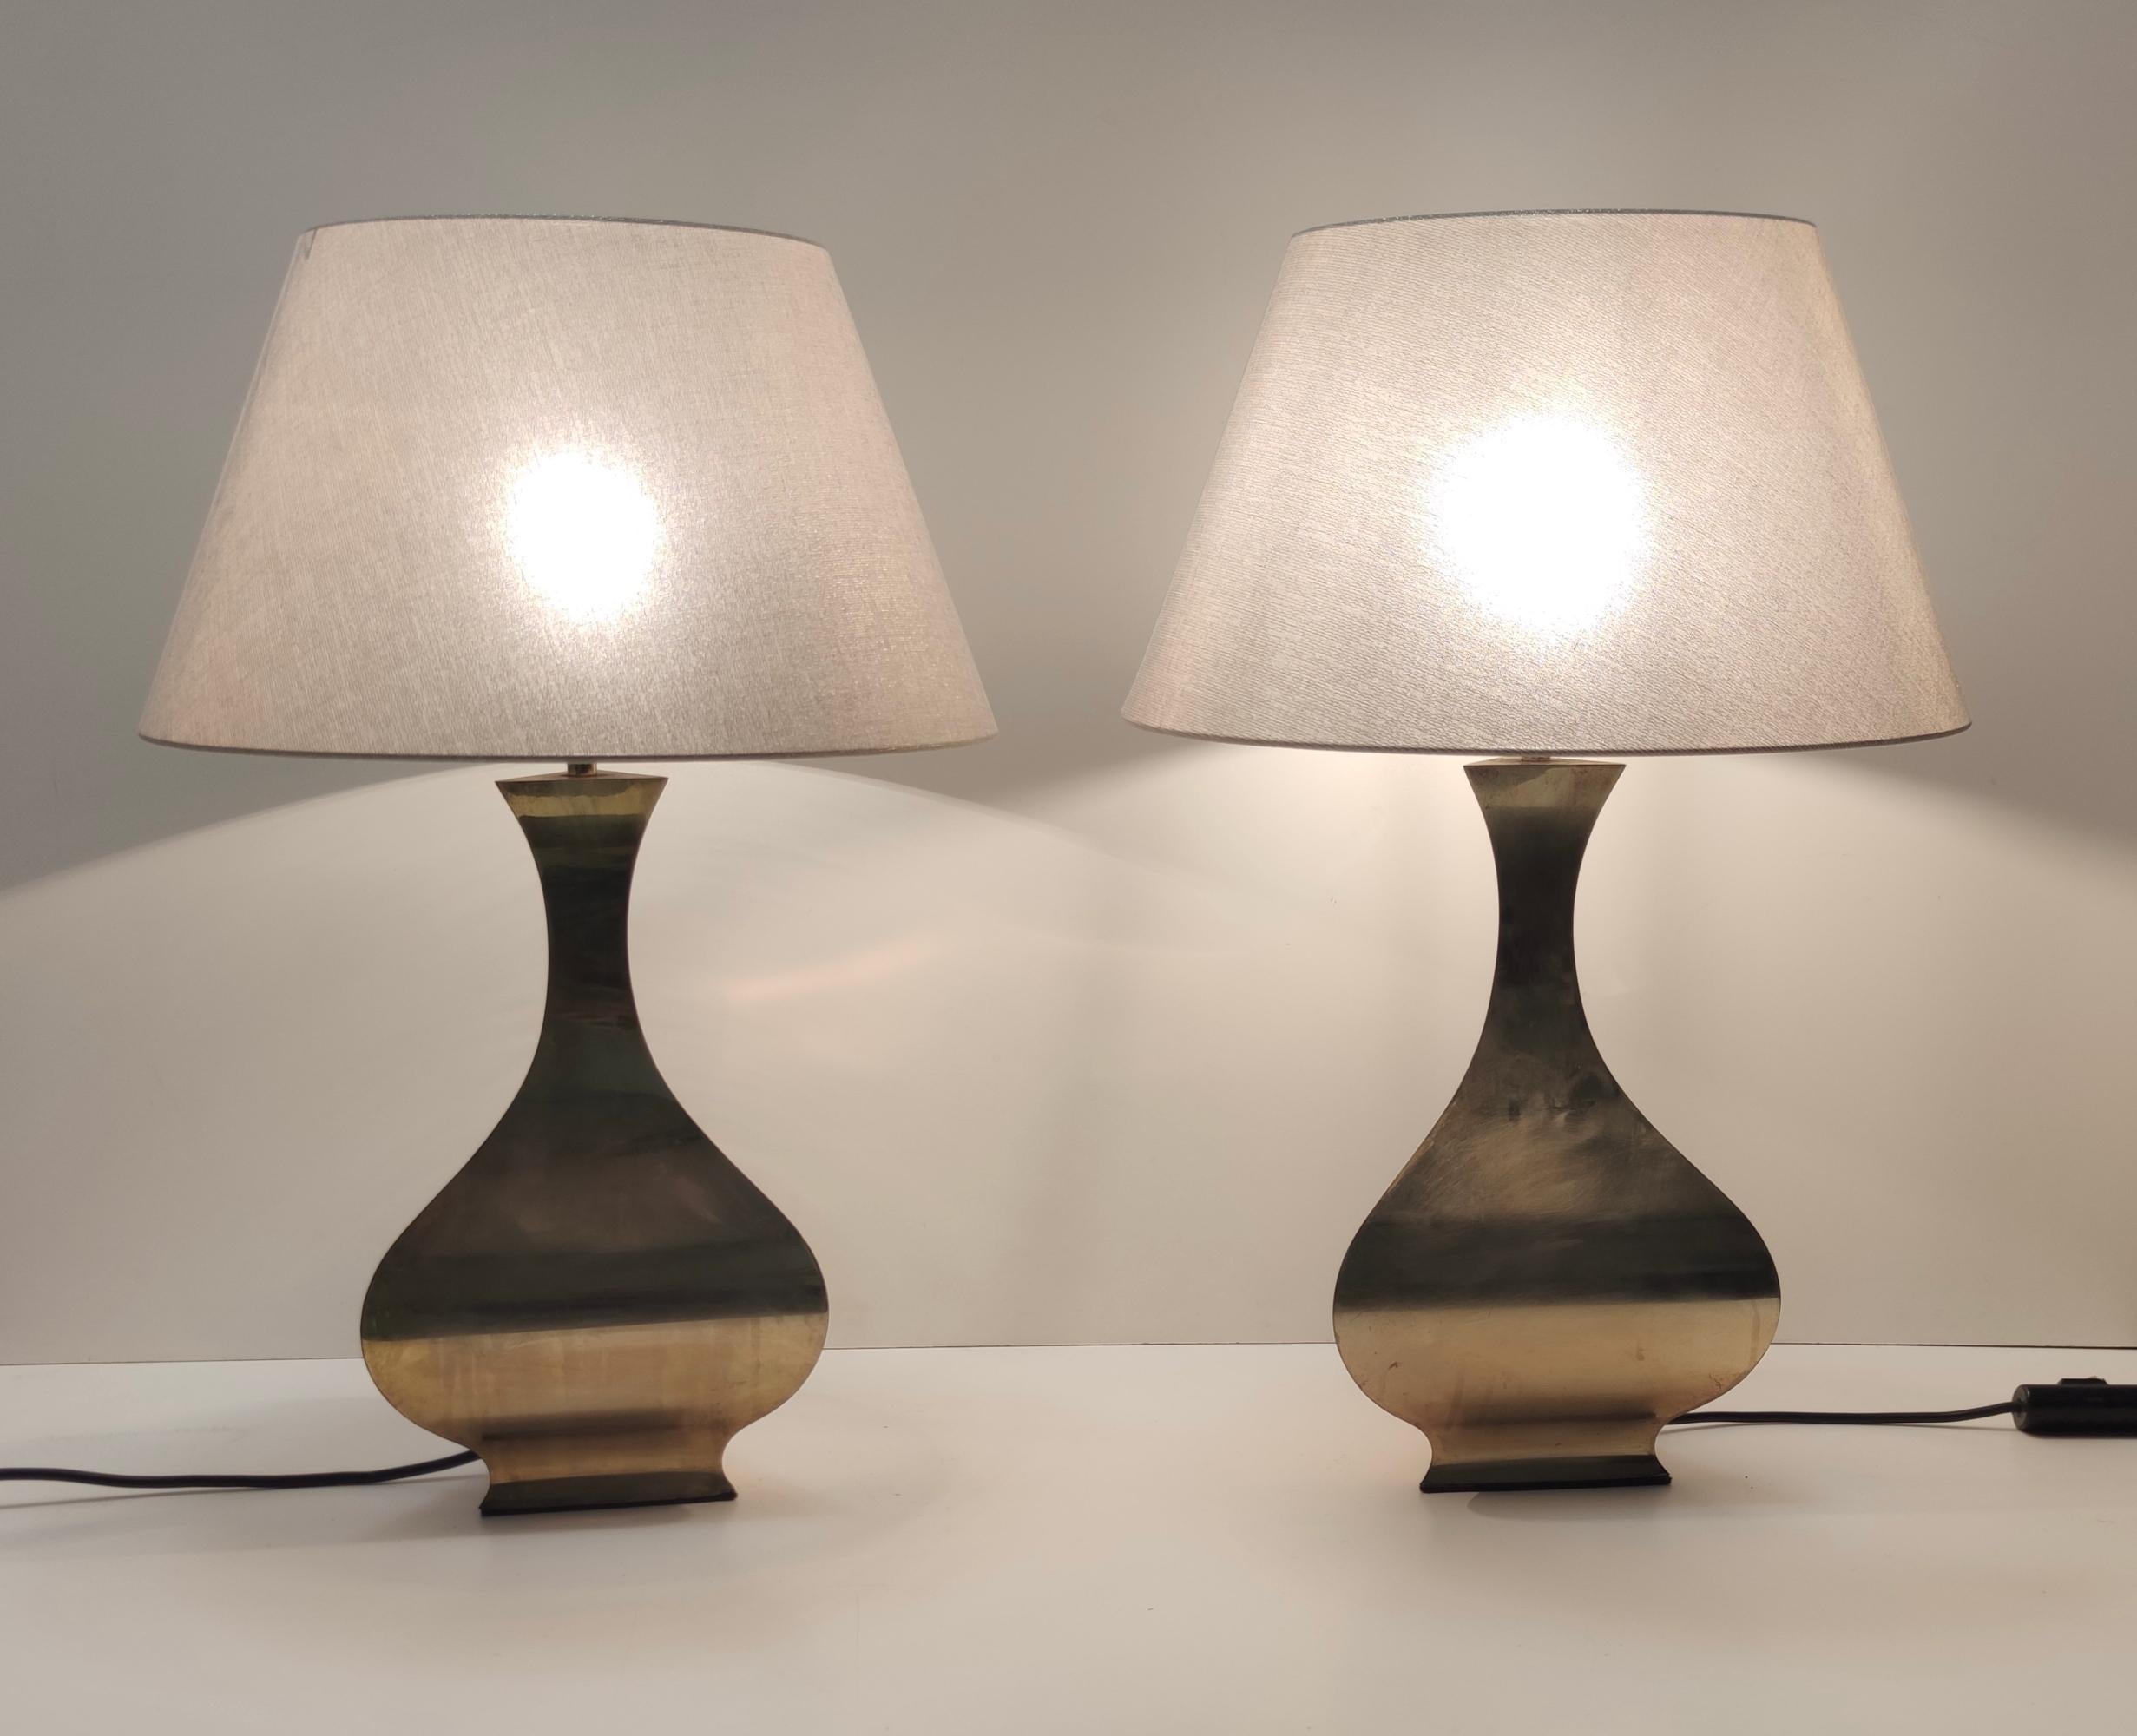 Hergestellt in Italien. 
Tonello und Montagna Grillo entwarfen diese Tischlampen in den 1970er bis 1980er Jahren.
Ihr Sockel ist aus Messing und die neu gestalteten Lampenschirme sind aus Stoff, der mit goldenen Fäden versehen ist.
Diese Lampen sind